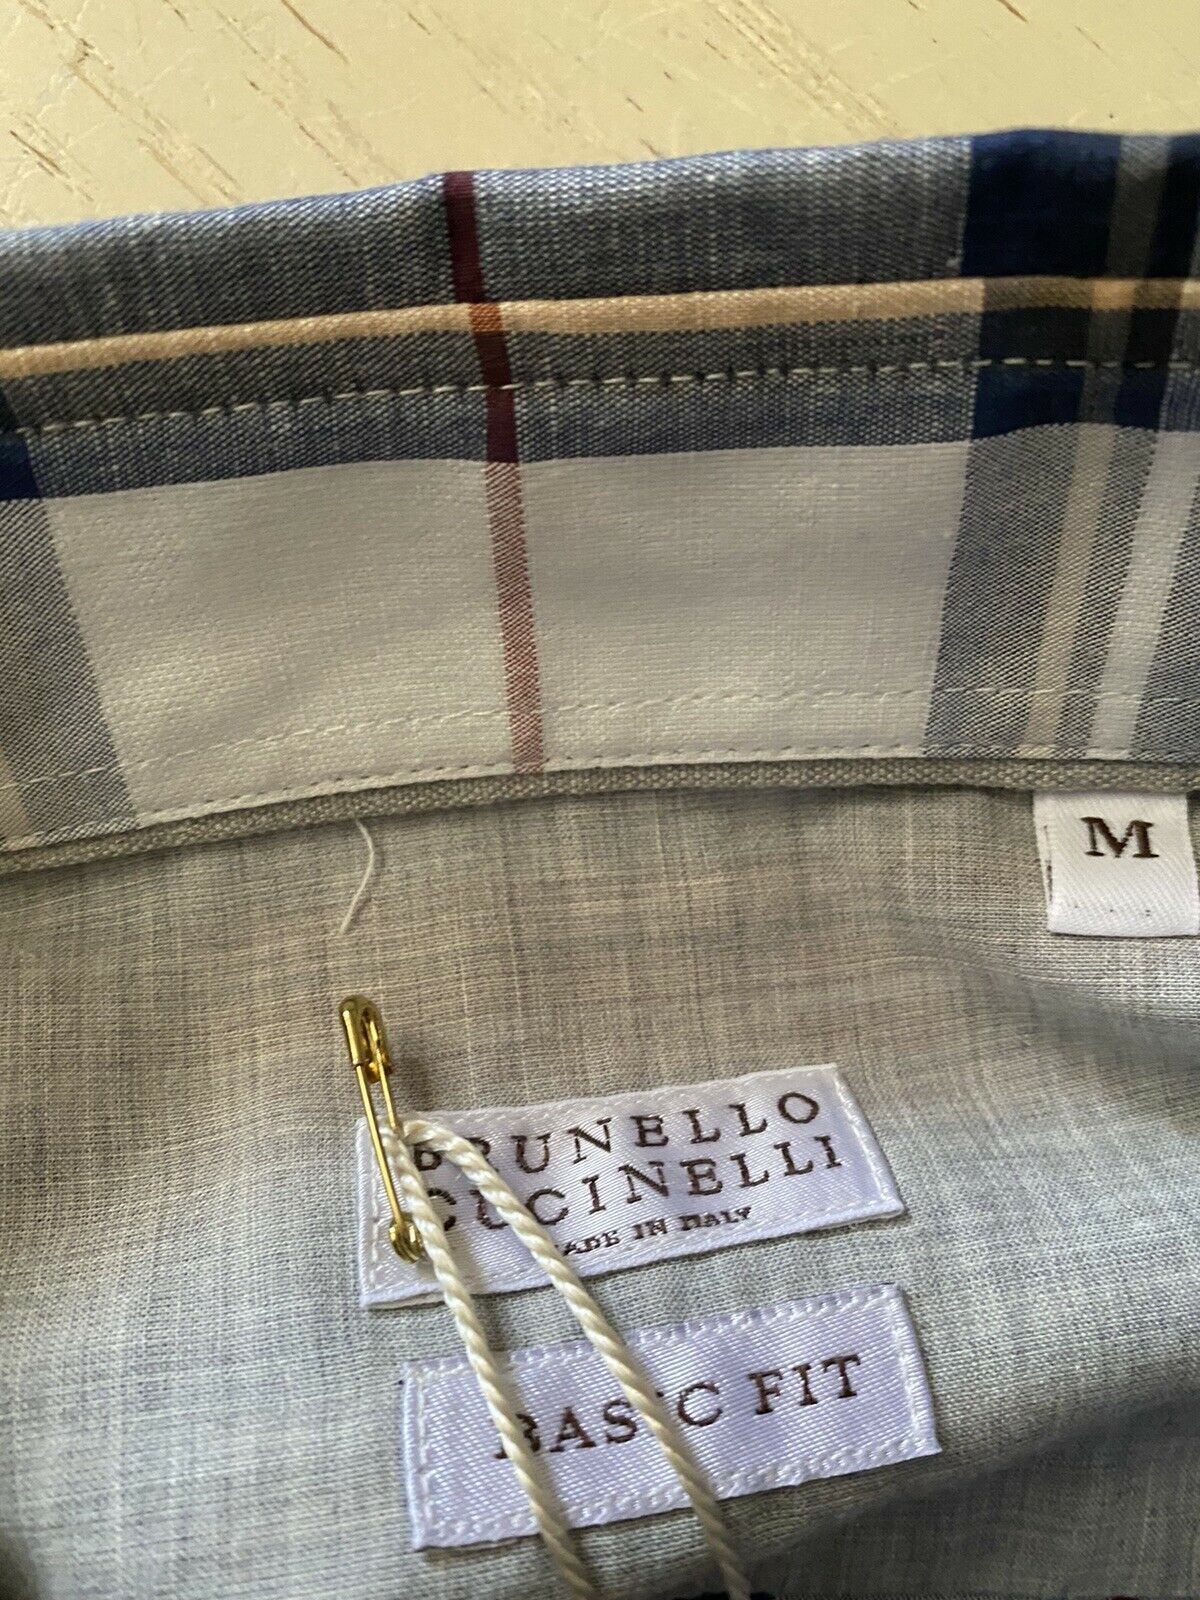 Neu mit Etikett: 895 $ Brunello Cucinelli Herren-Hemd aus Leinen/Baumwolle Basic Fit Beige/Marine M Italien